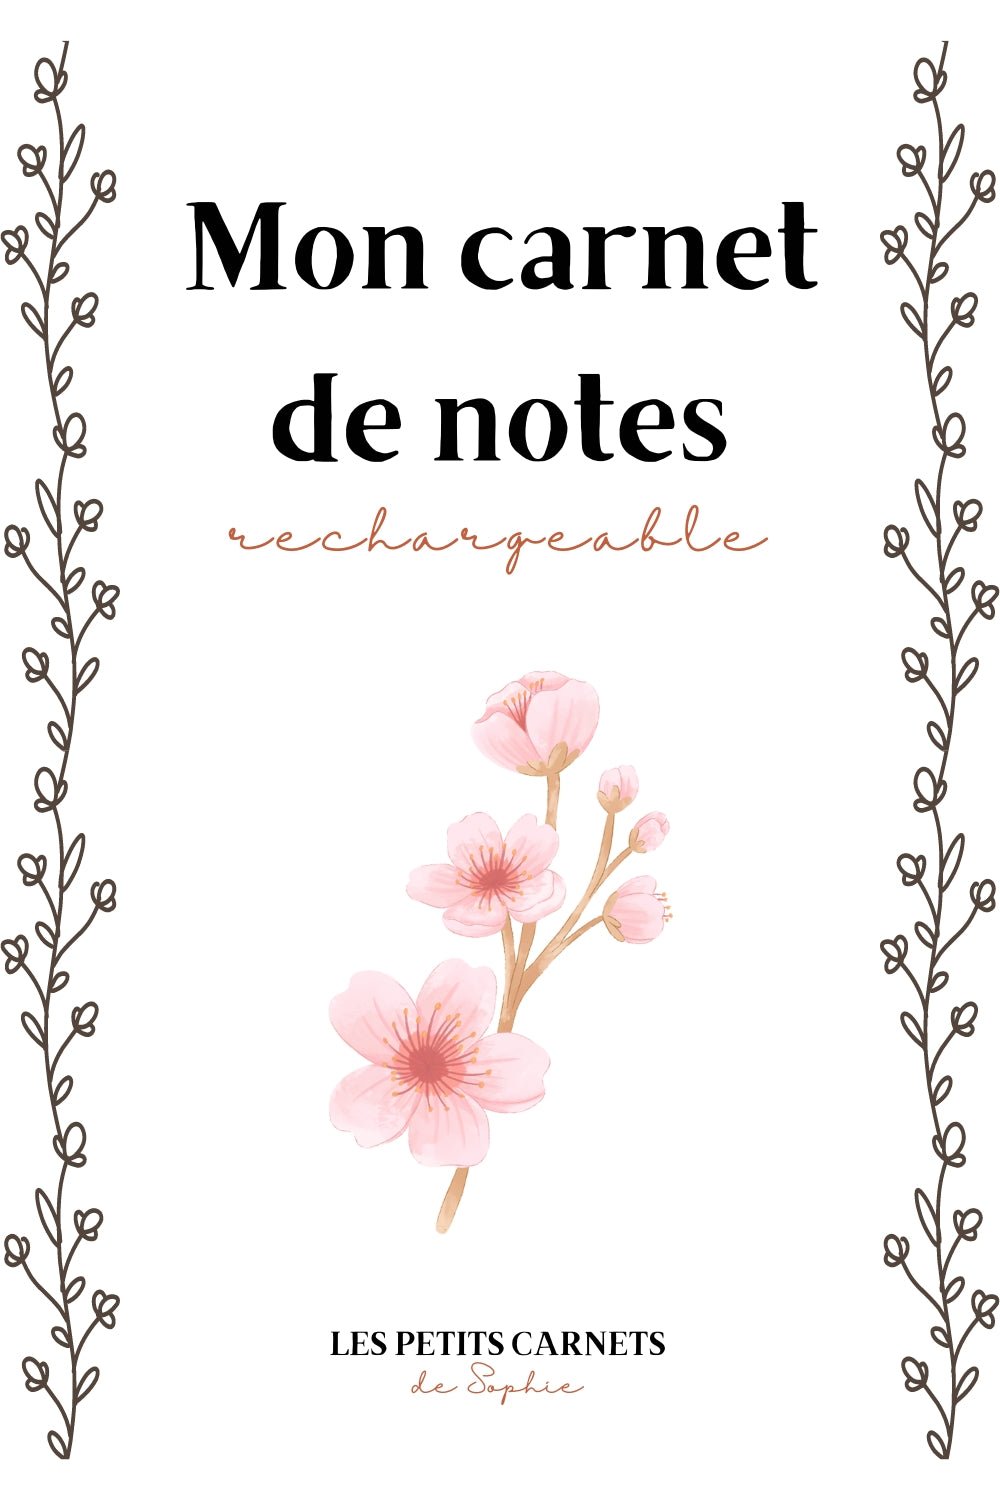 Mon carnet de notes rechargeable - Format A5 – Les petits carnets